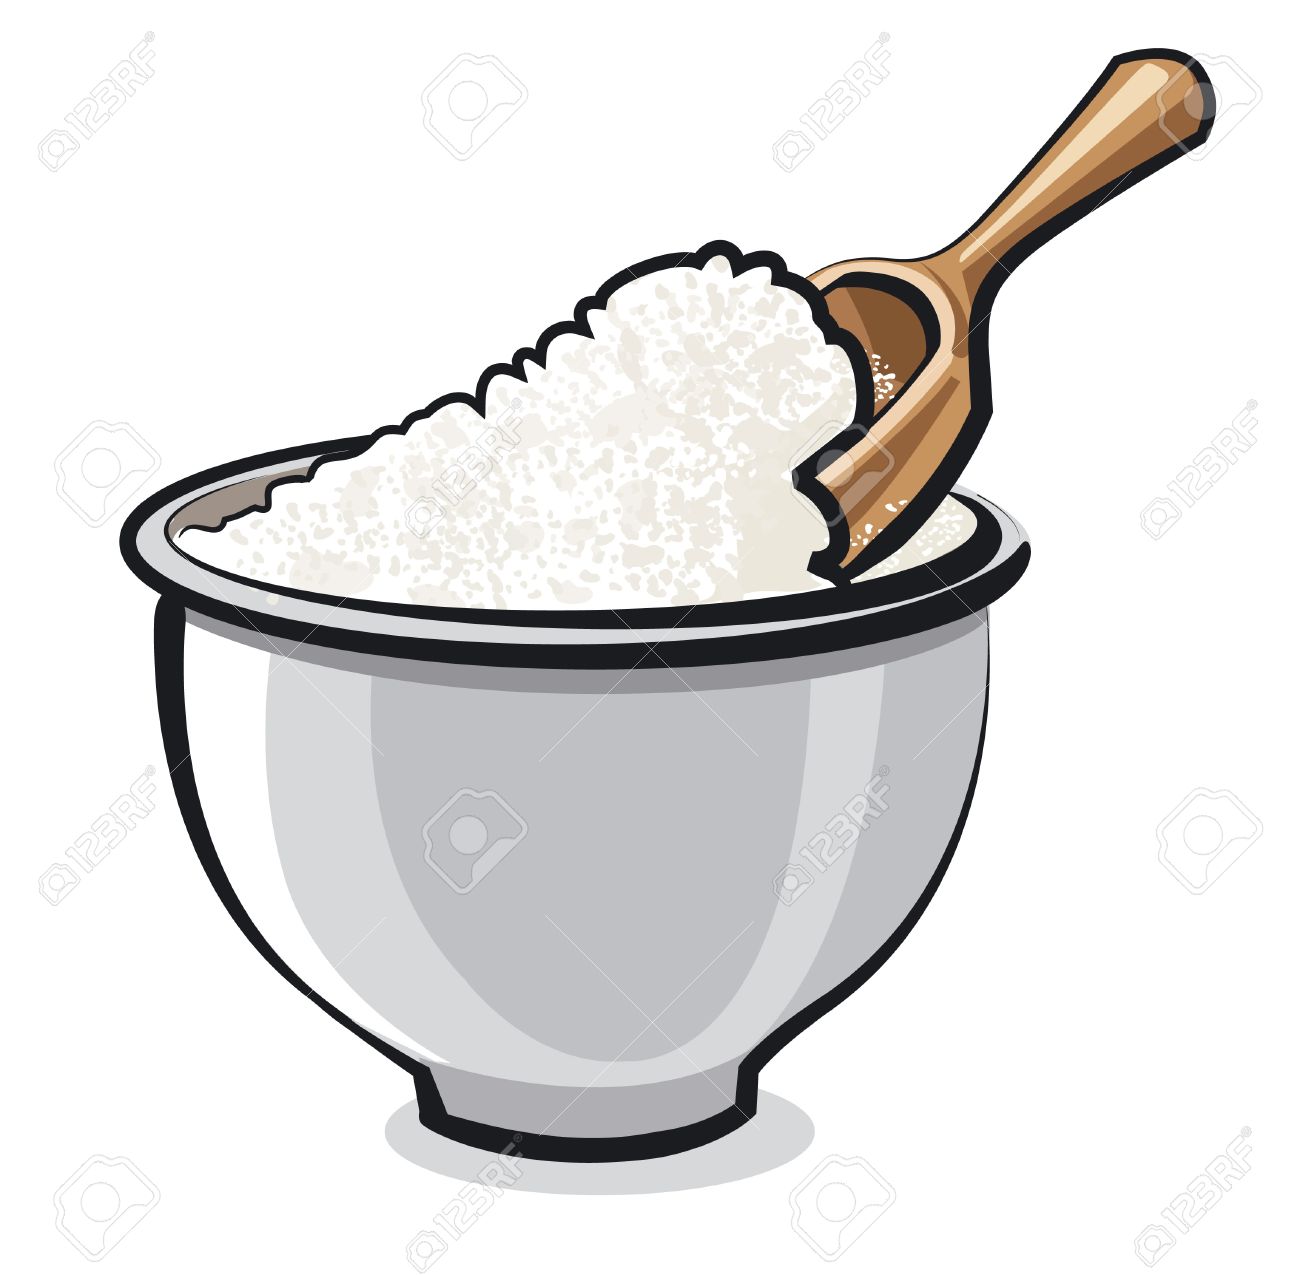 flour: Flour in a bowl